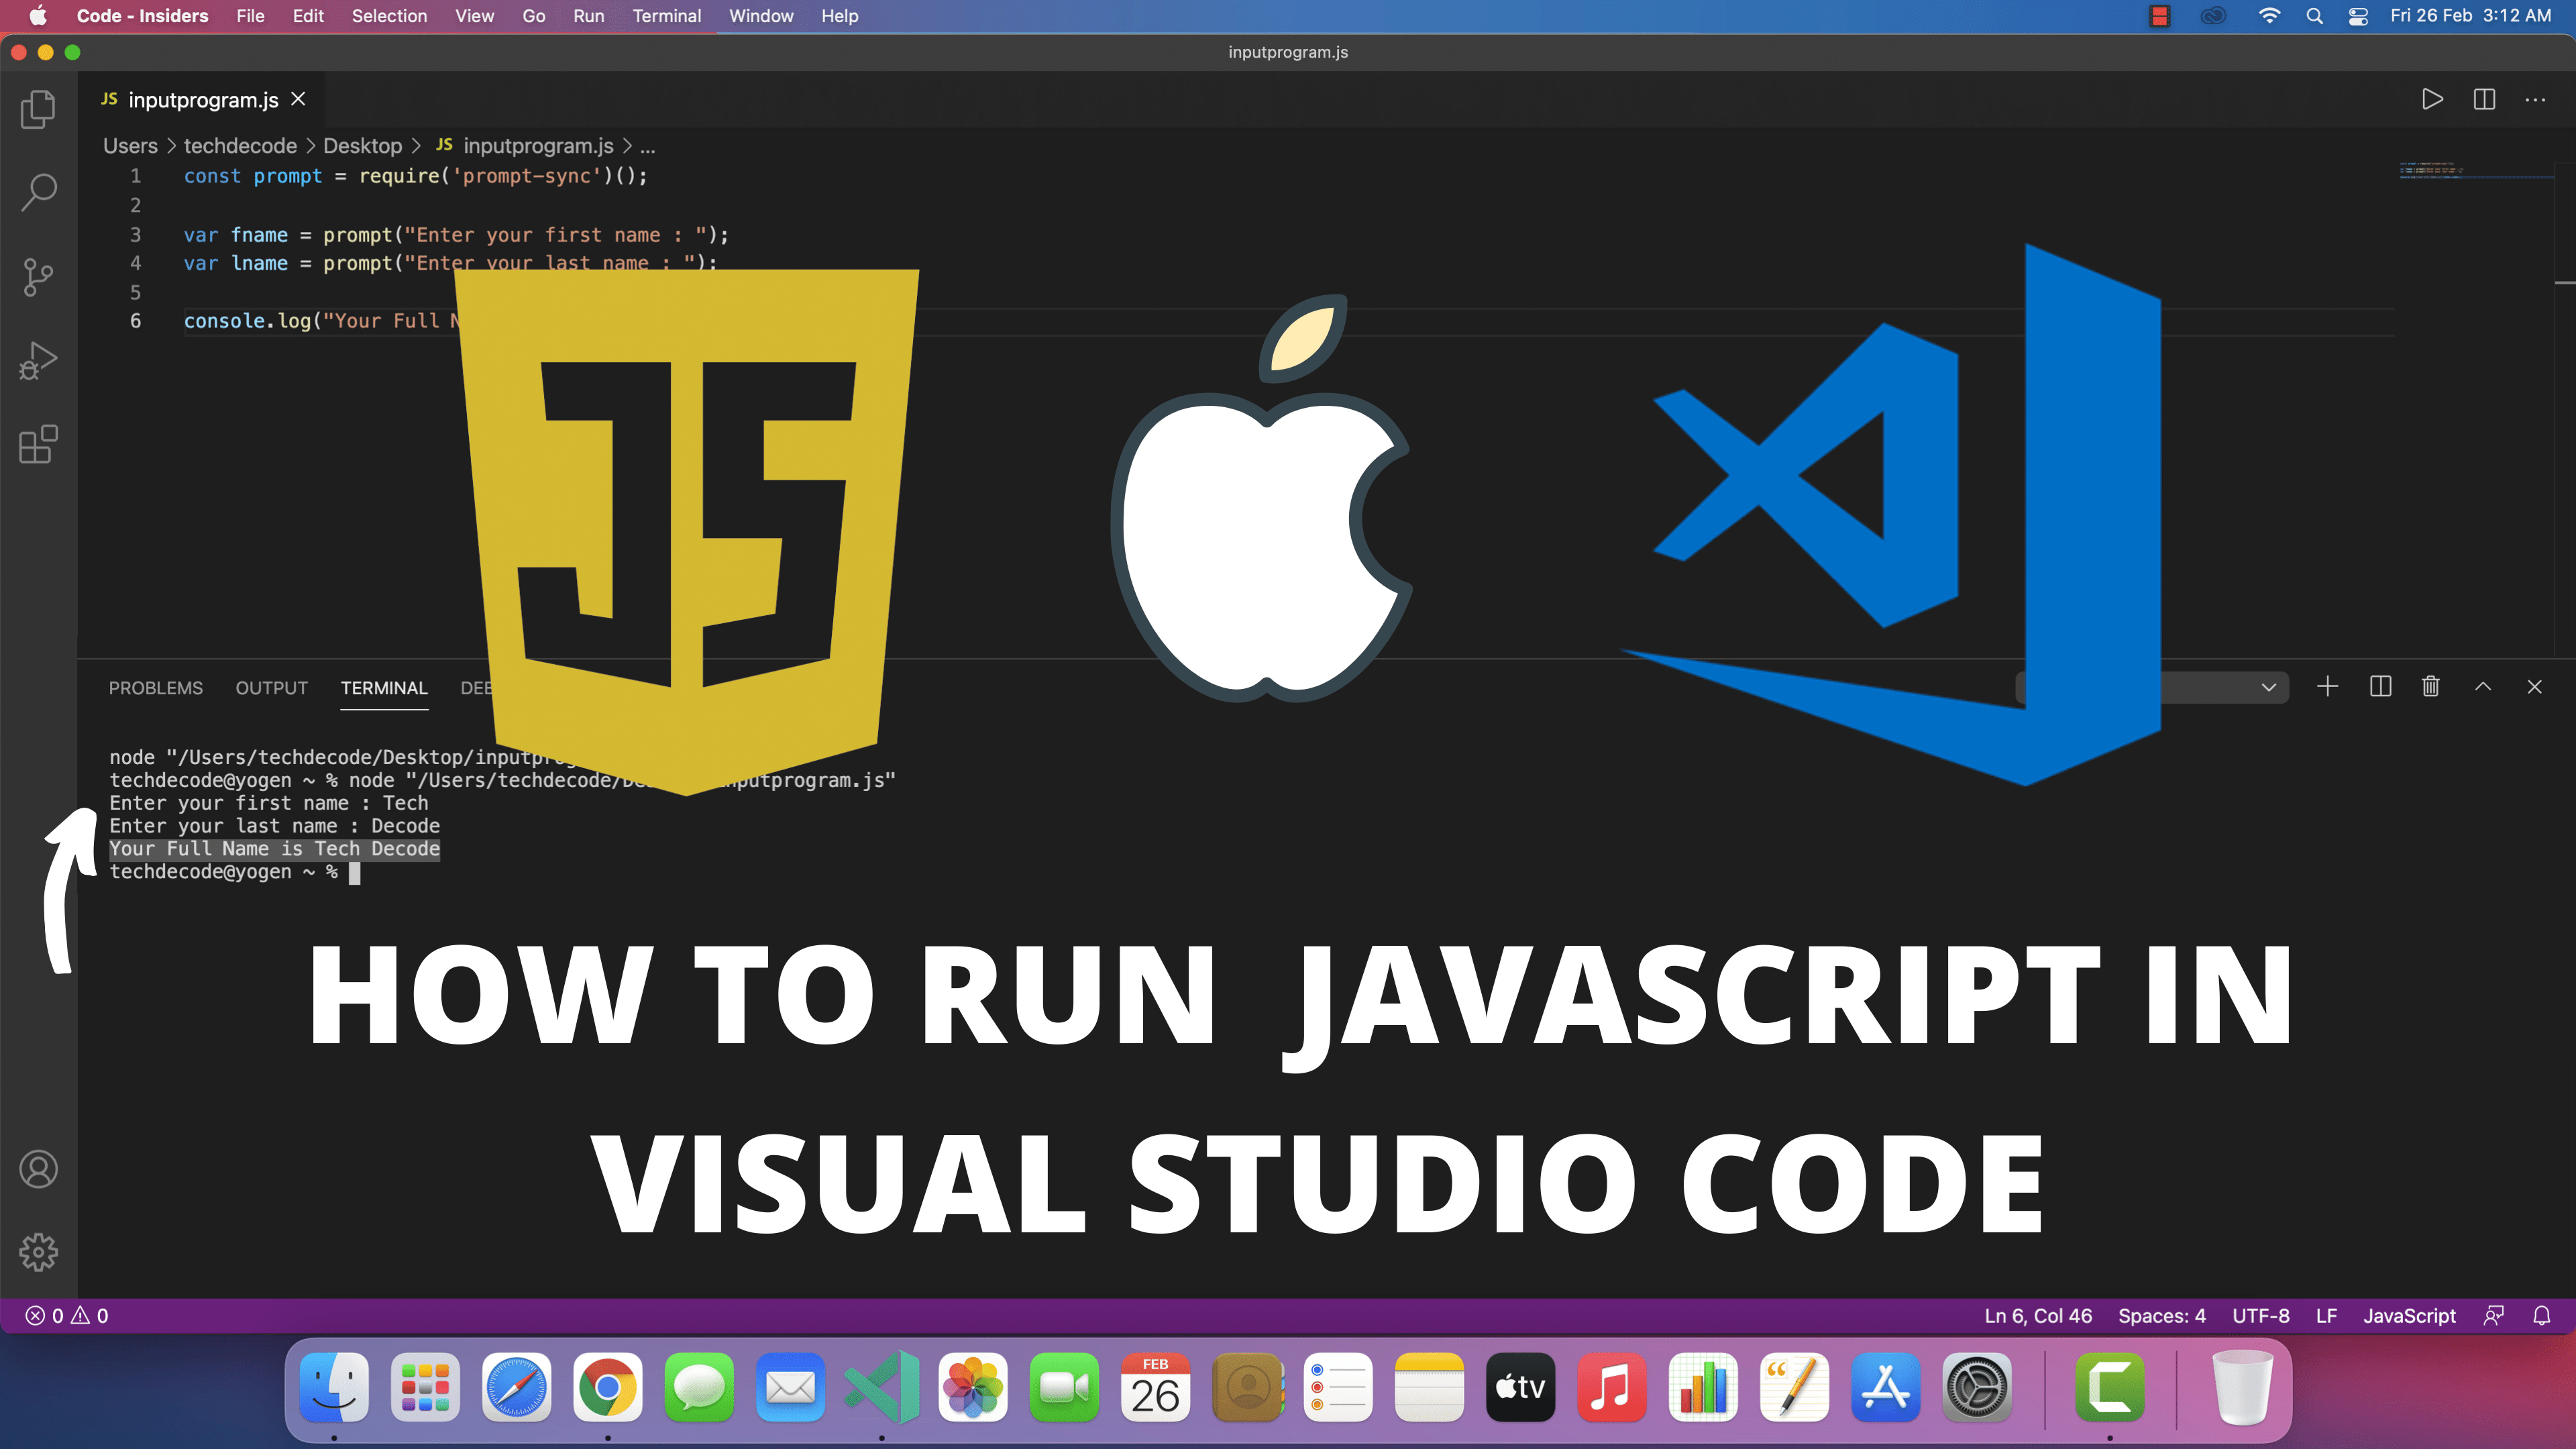 run c program in visual studio code mac